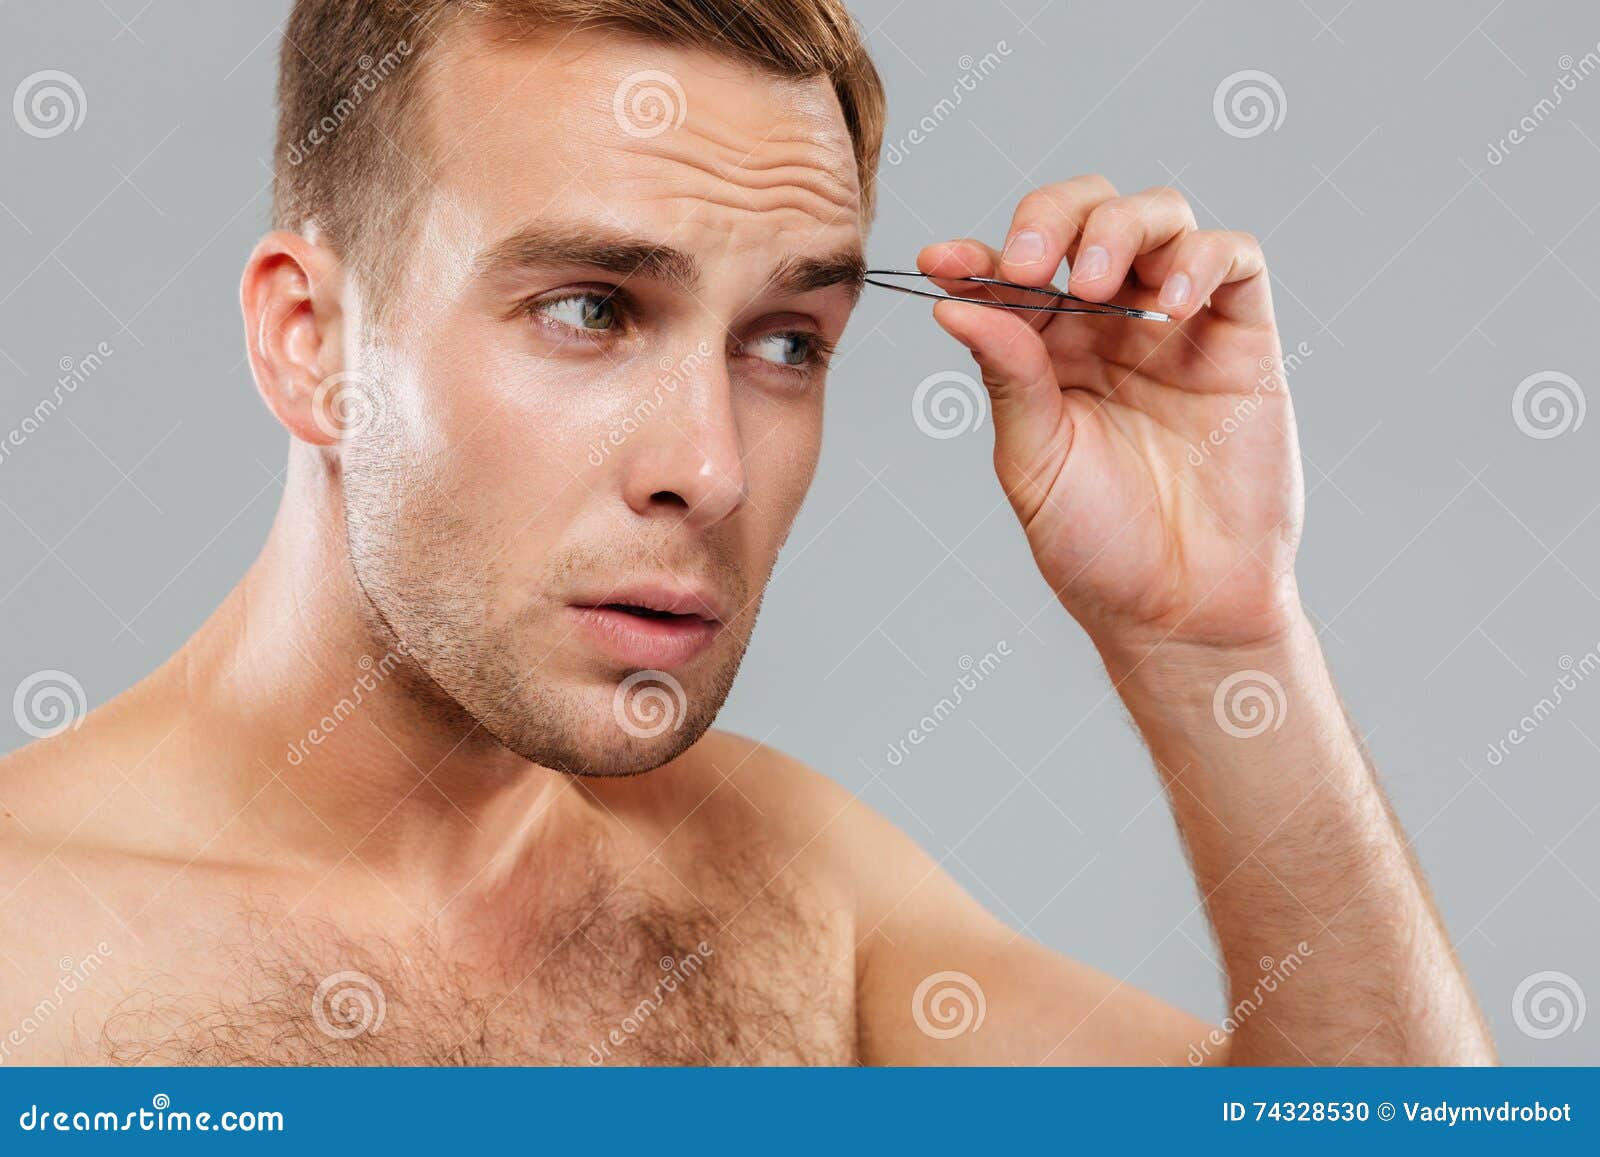 Фото снимаем парней. Мужик выдирает волосы. Выщипать бороду пинцетом мужчине. Фото с пинцетом мужчина.